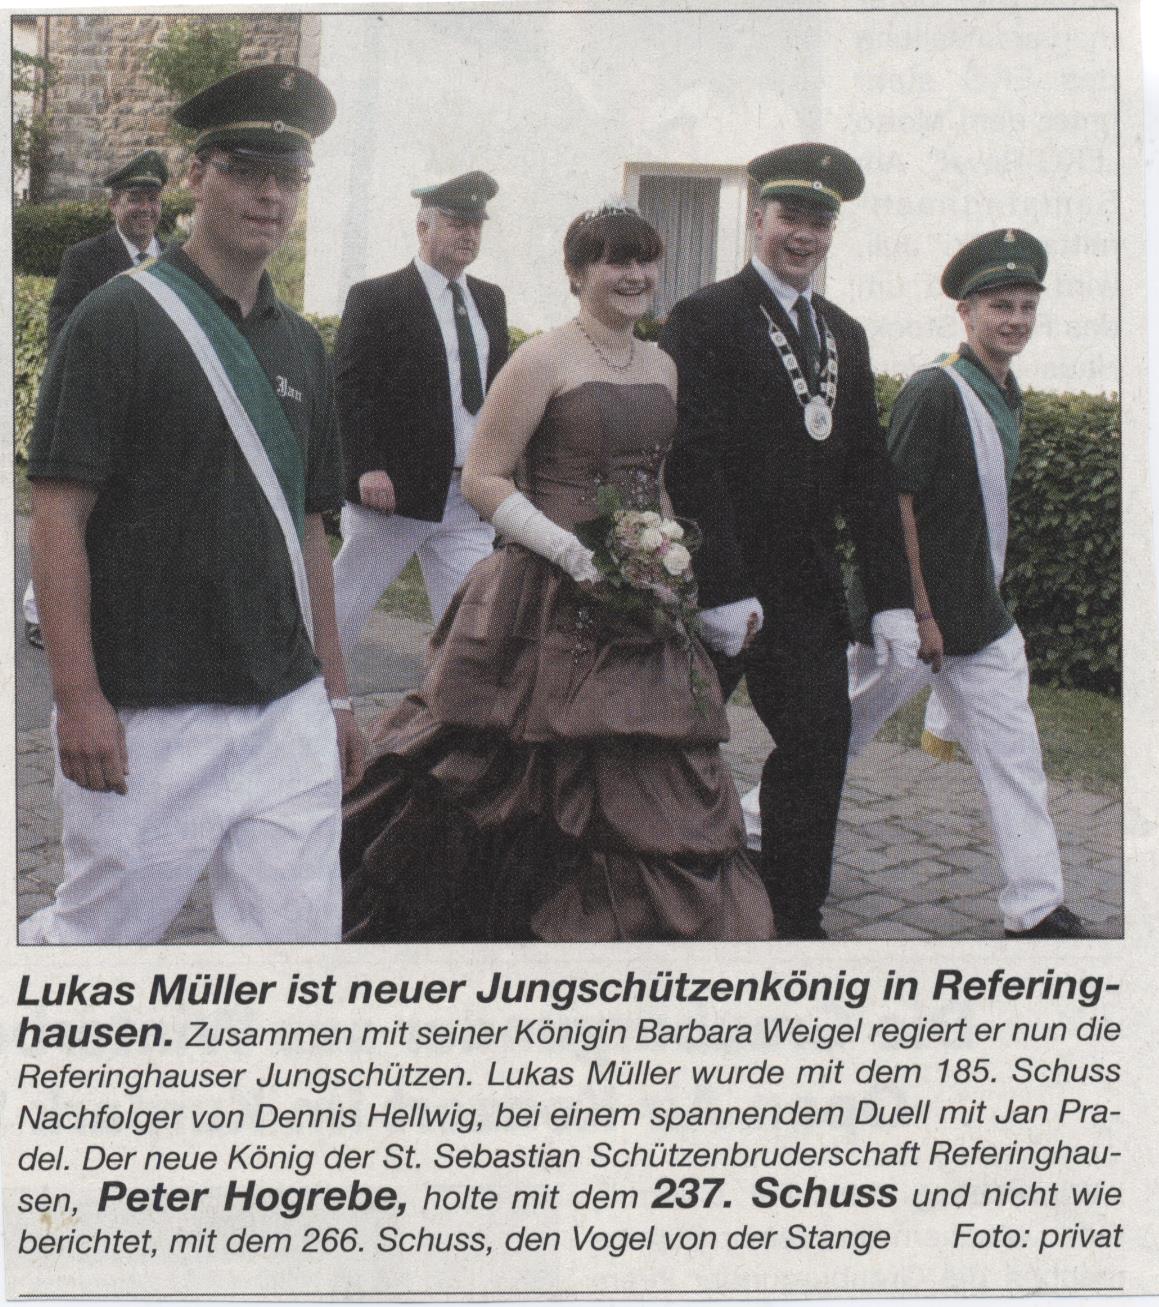 Jungschützenkönigspaar Lukas Müller und Barbara Weigel